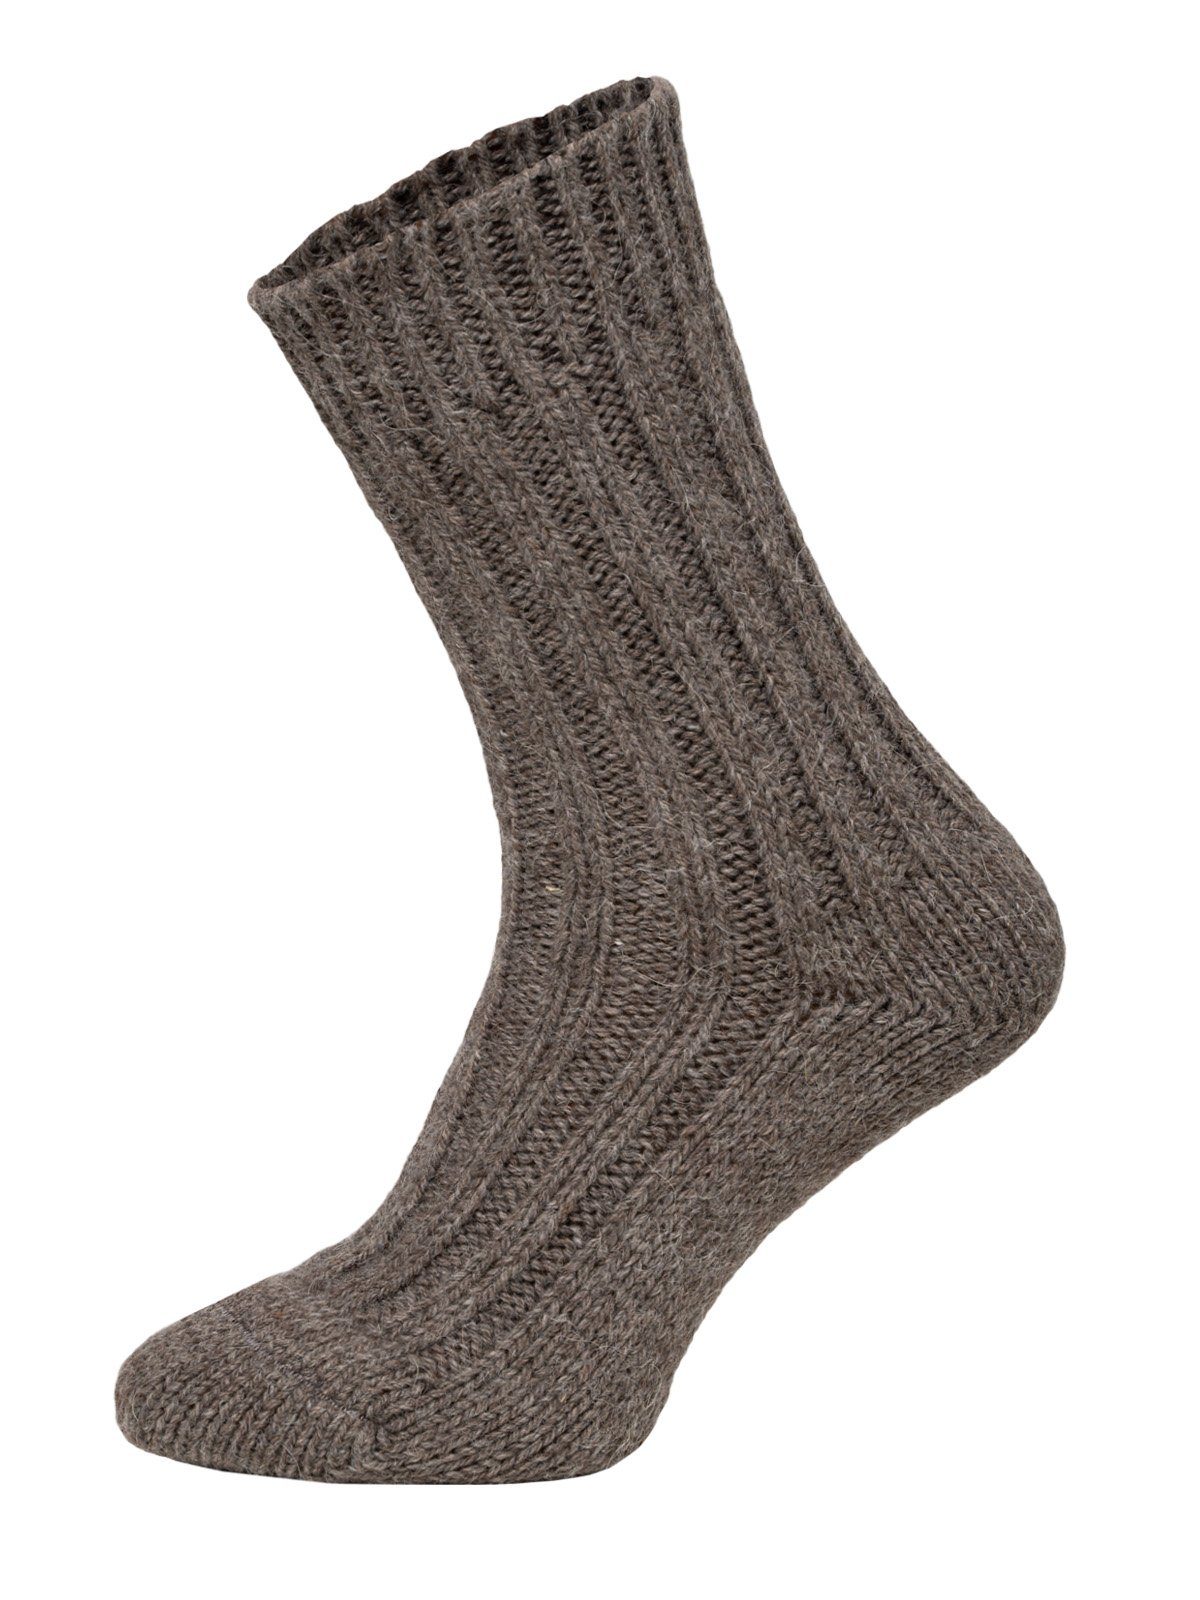 HomeOfSocks Socken Wollsocken Wollanteil Strapazierfähige Alpakawolle Taupe/Braun Alpakawolle und und Wollsocken mit 50% mit warme